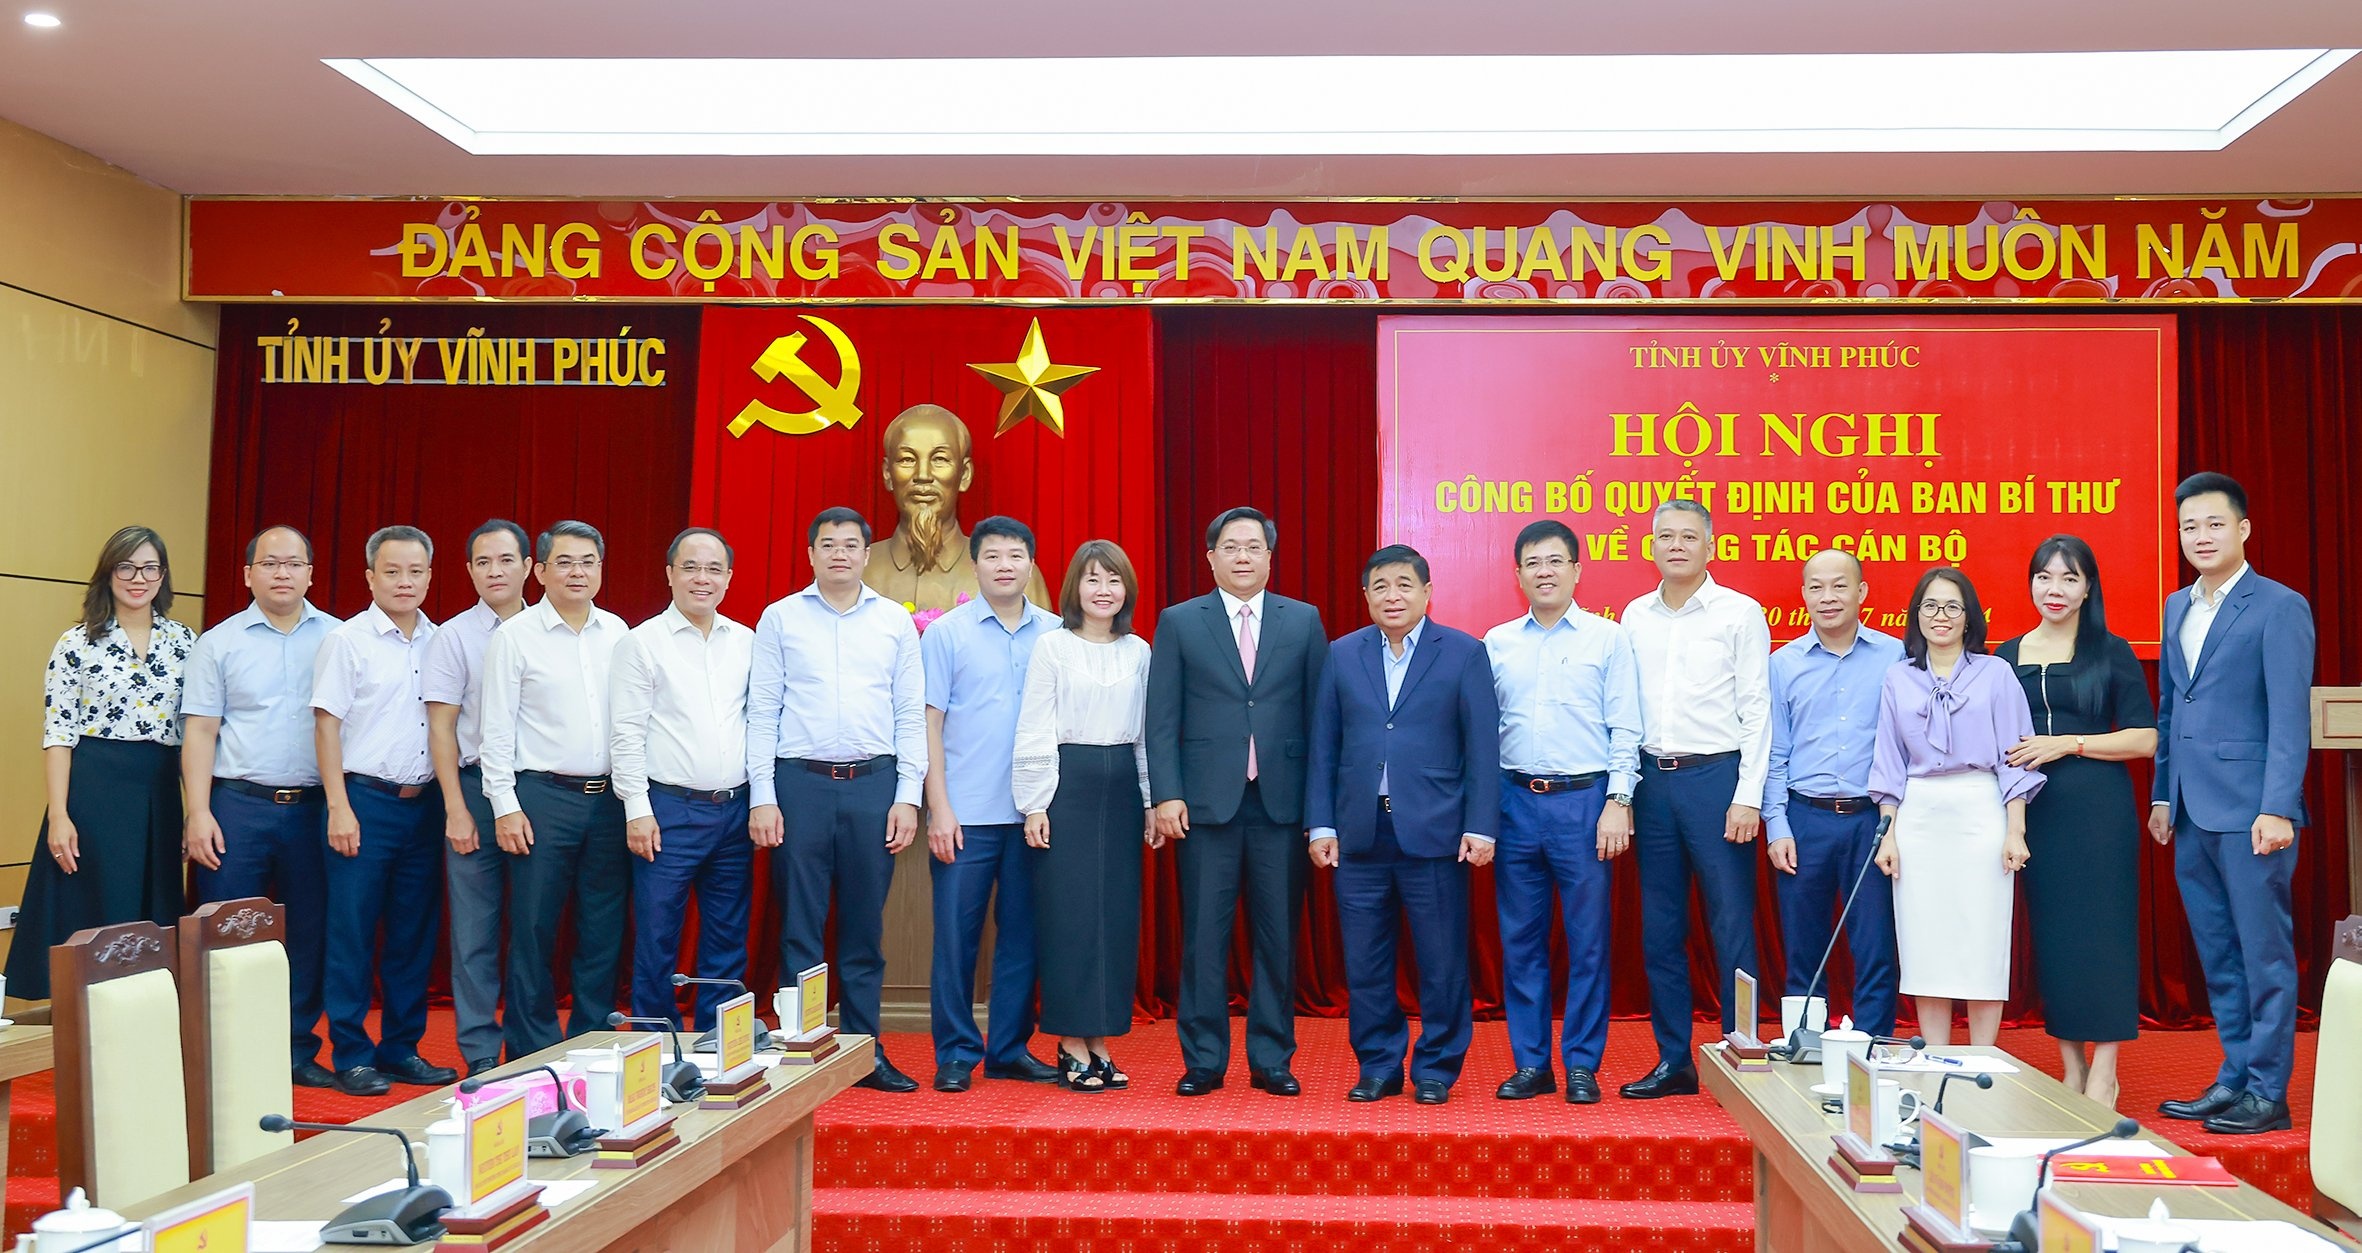 Hội nghị công bố quyết định ông Trần Duy Đông giữ chức Phó Bí thư Tỉnh ủy Vĩnh Phúc nhiệm kỳ 2020-2025